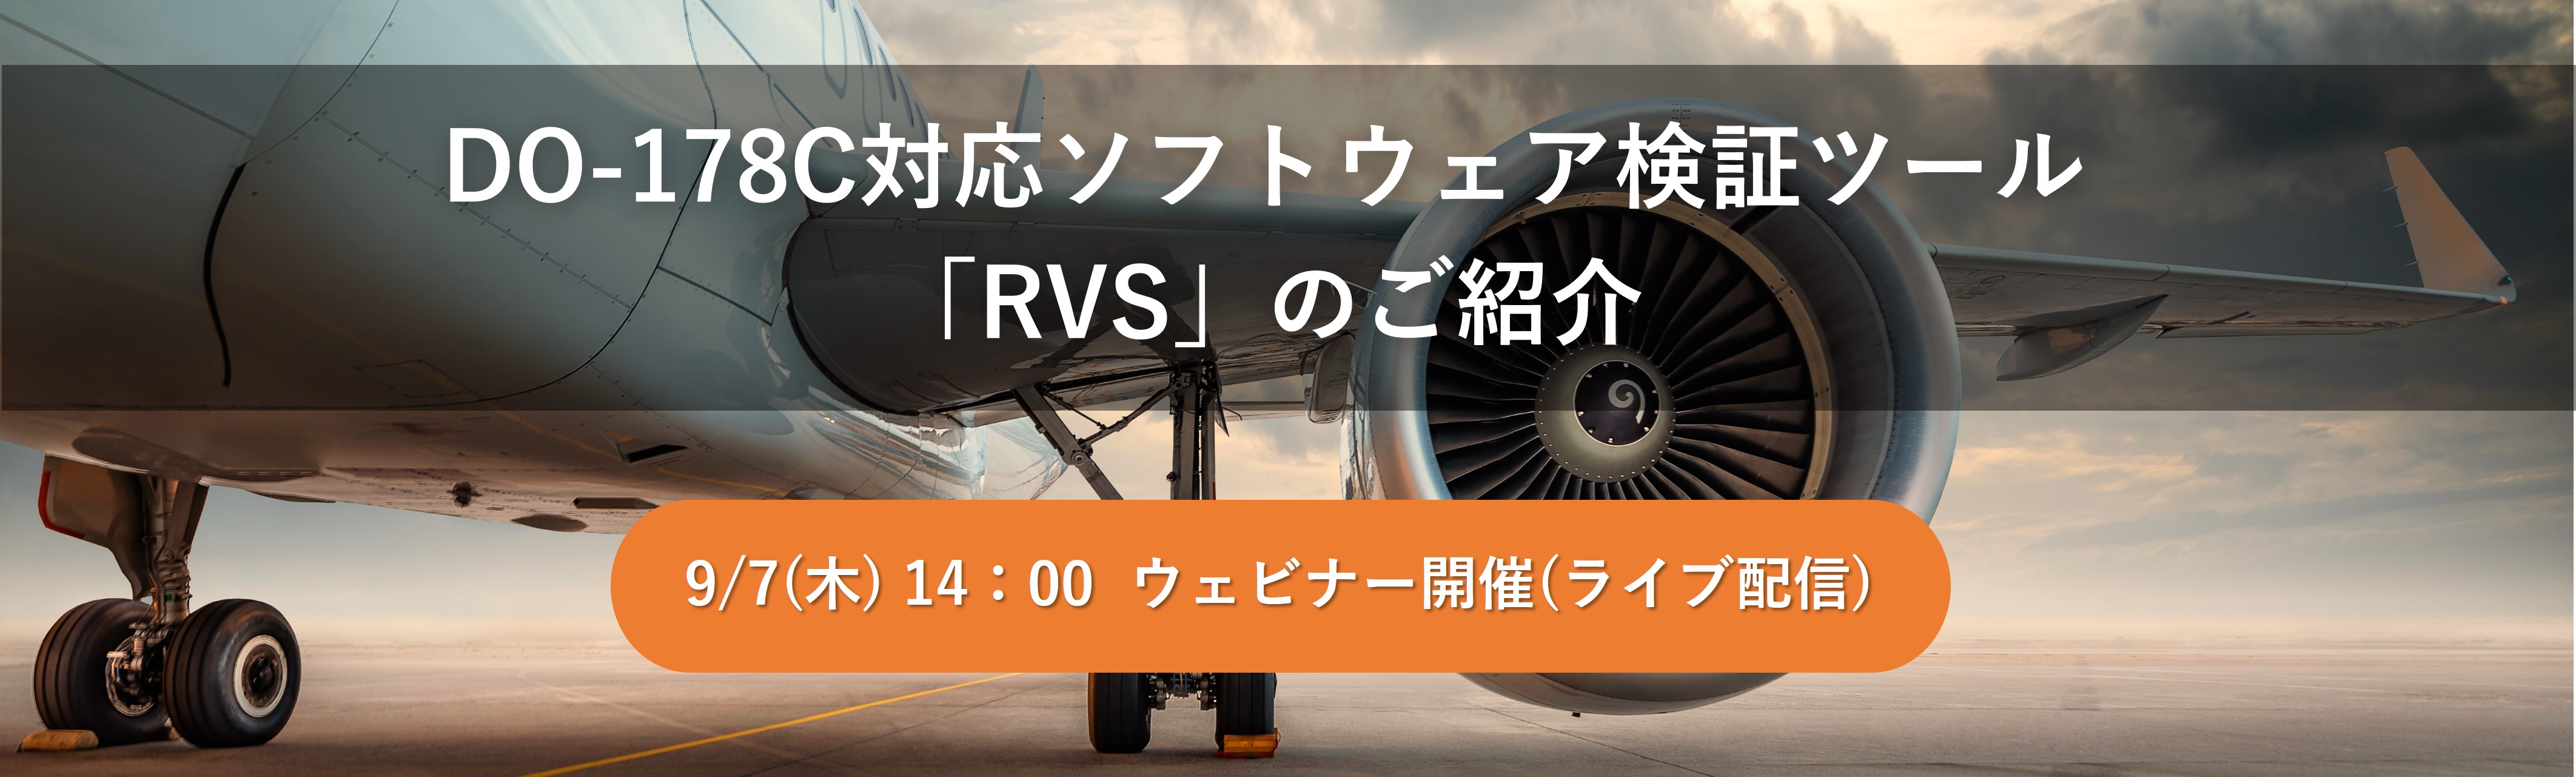 【Web】DO-178C対応ソフトウェア検証ツール「RVS」のご紹介【終了】